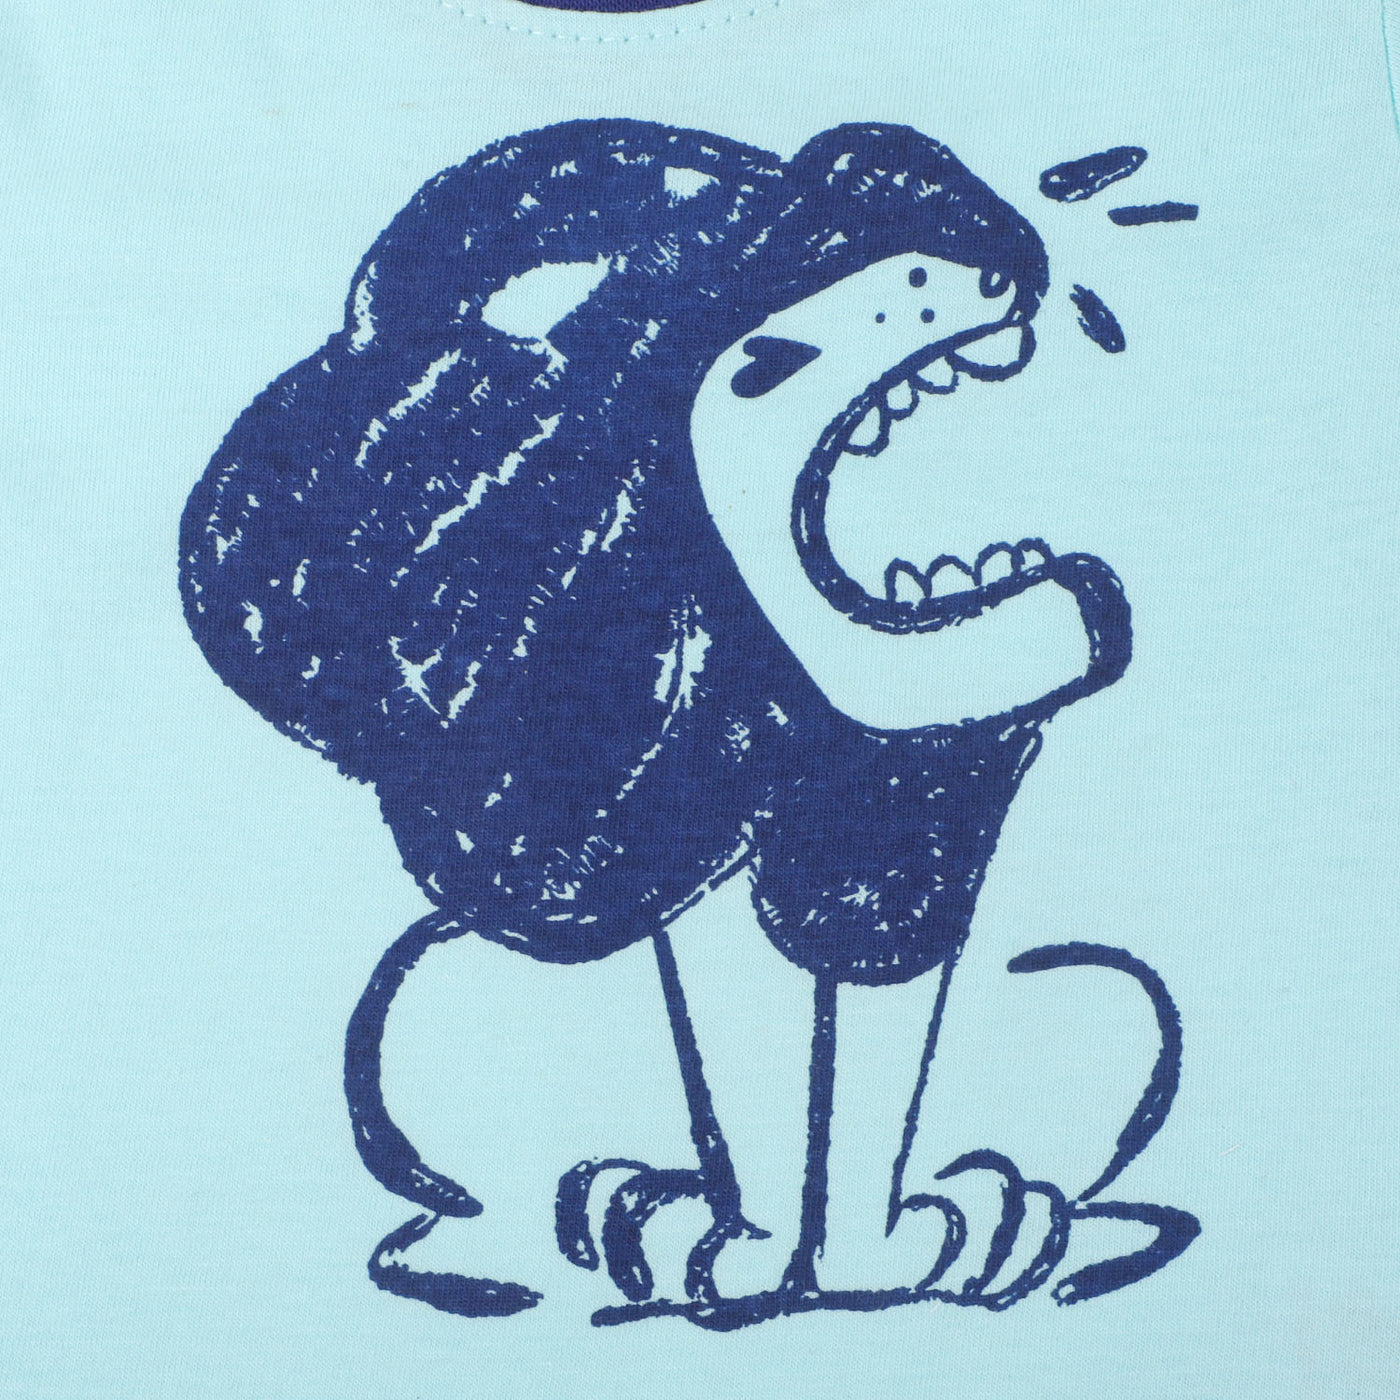 Infant Boys Cotton T-Shirt Lion - Sky Blue